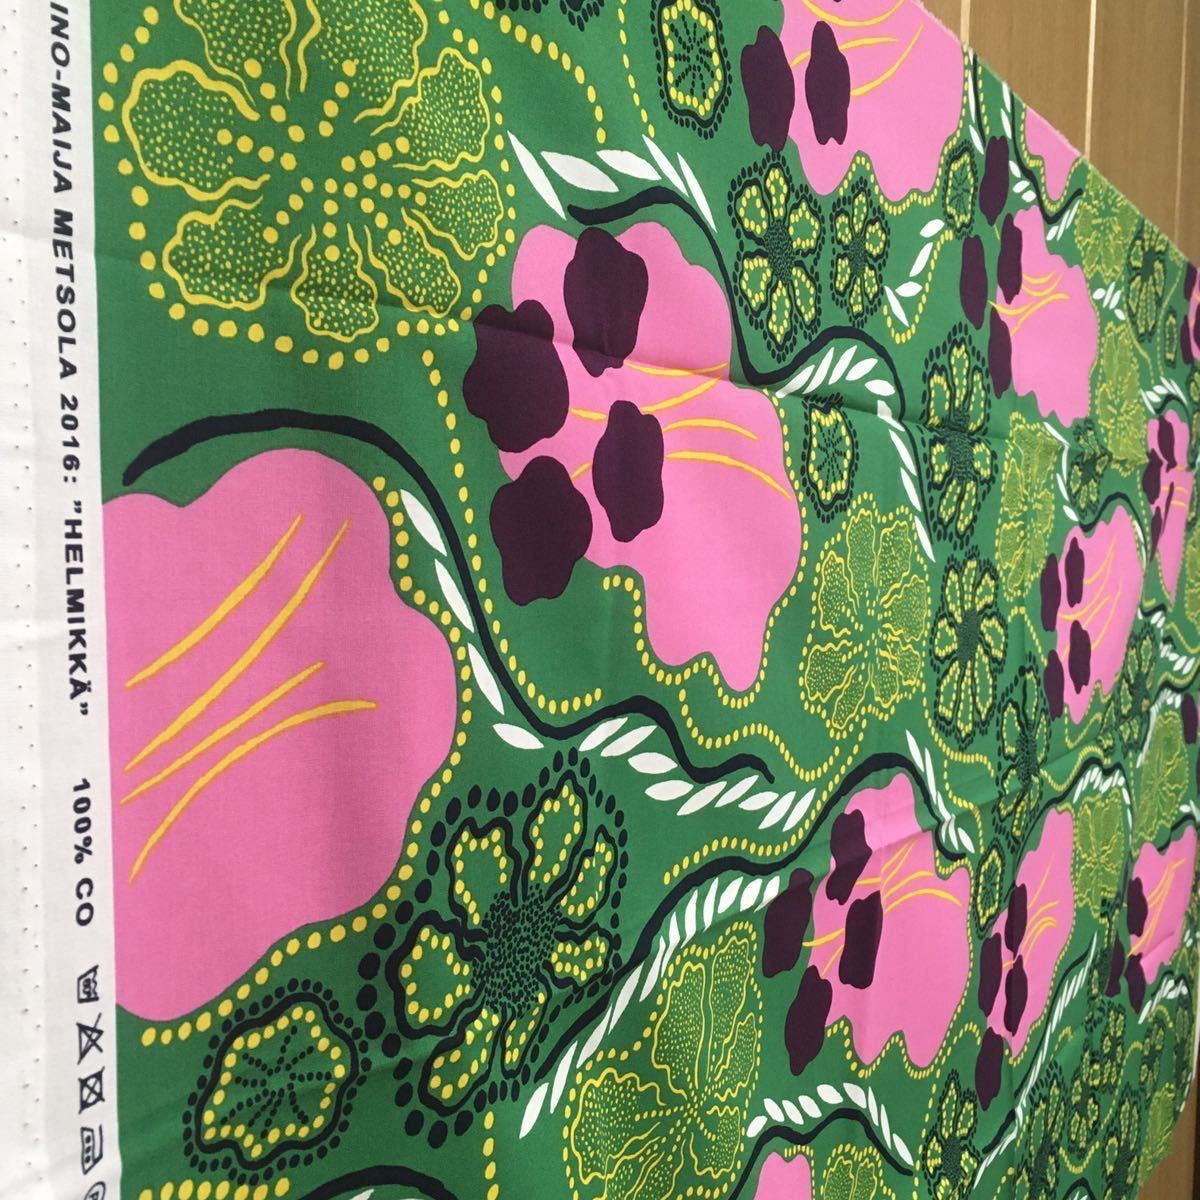  специальная цена!* Marimekko 43x72. ад mikaHELMIKKA хлопок ткань marimekko ткань ткань растения зеленый розовый лоскут новый товар 